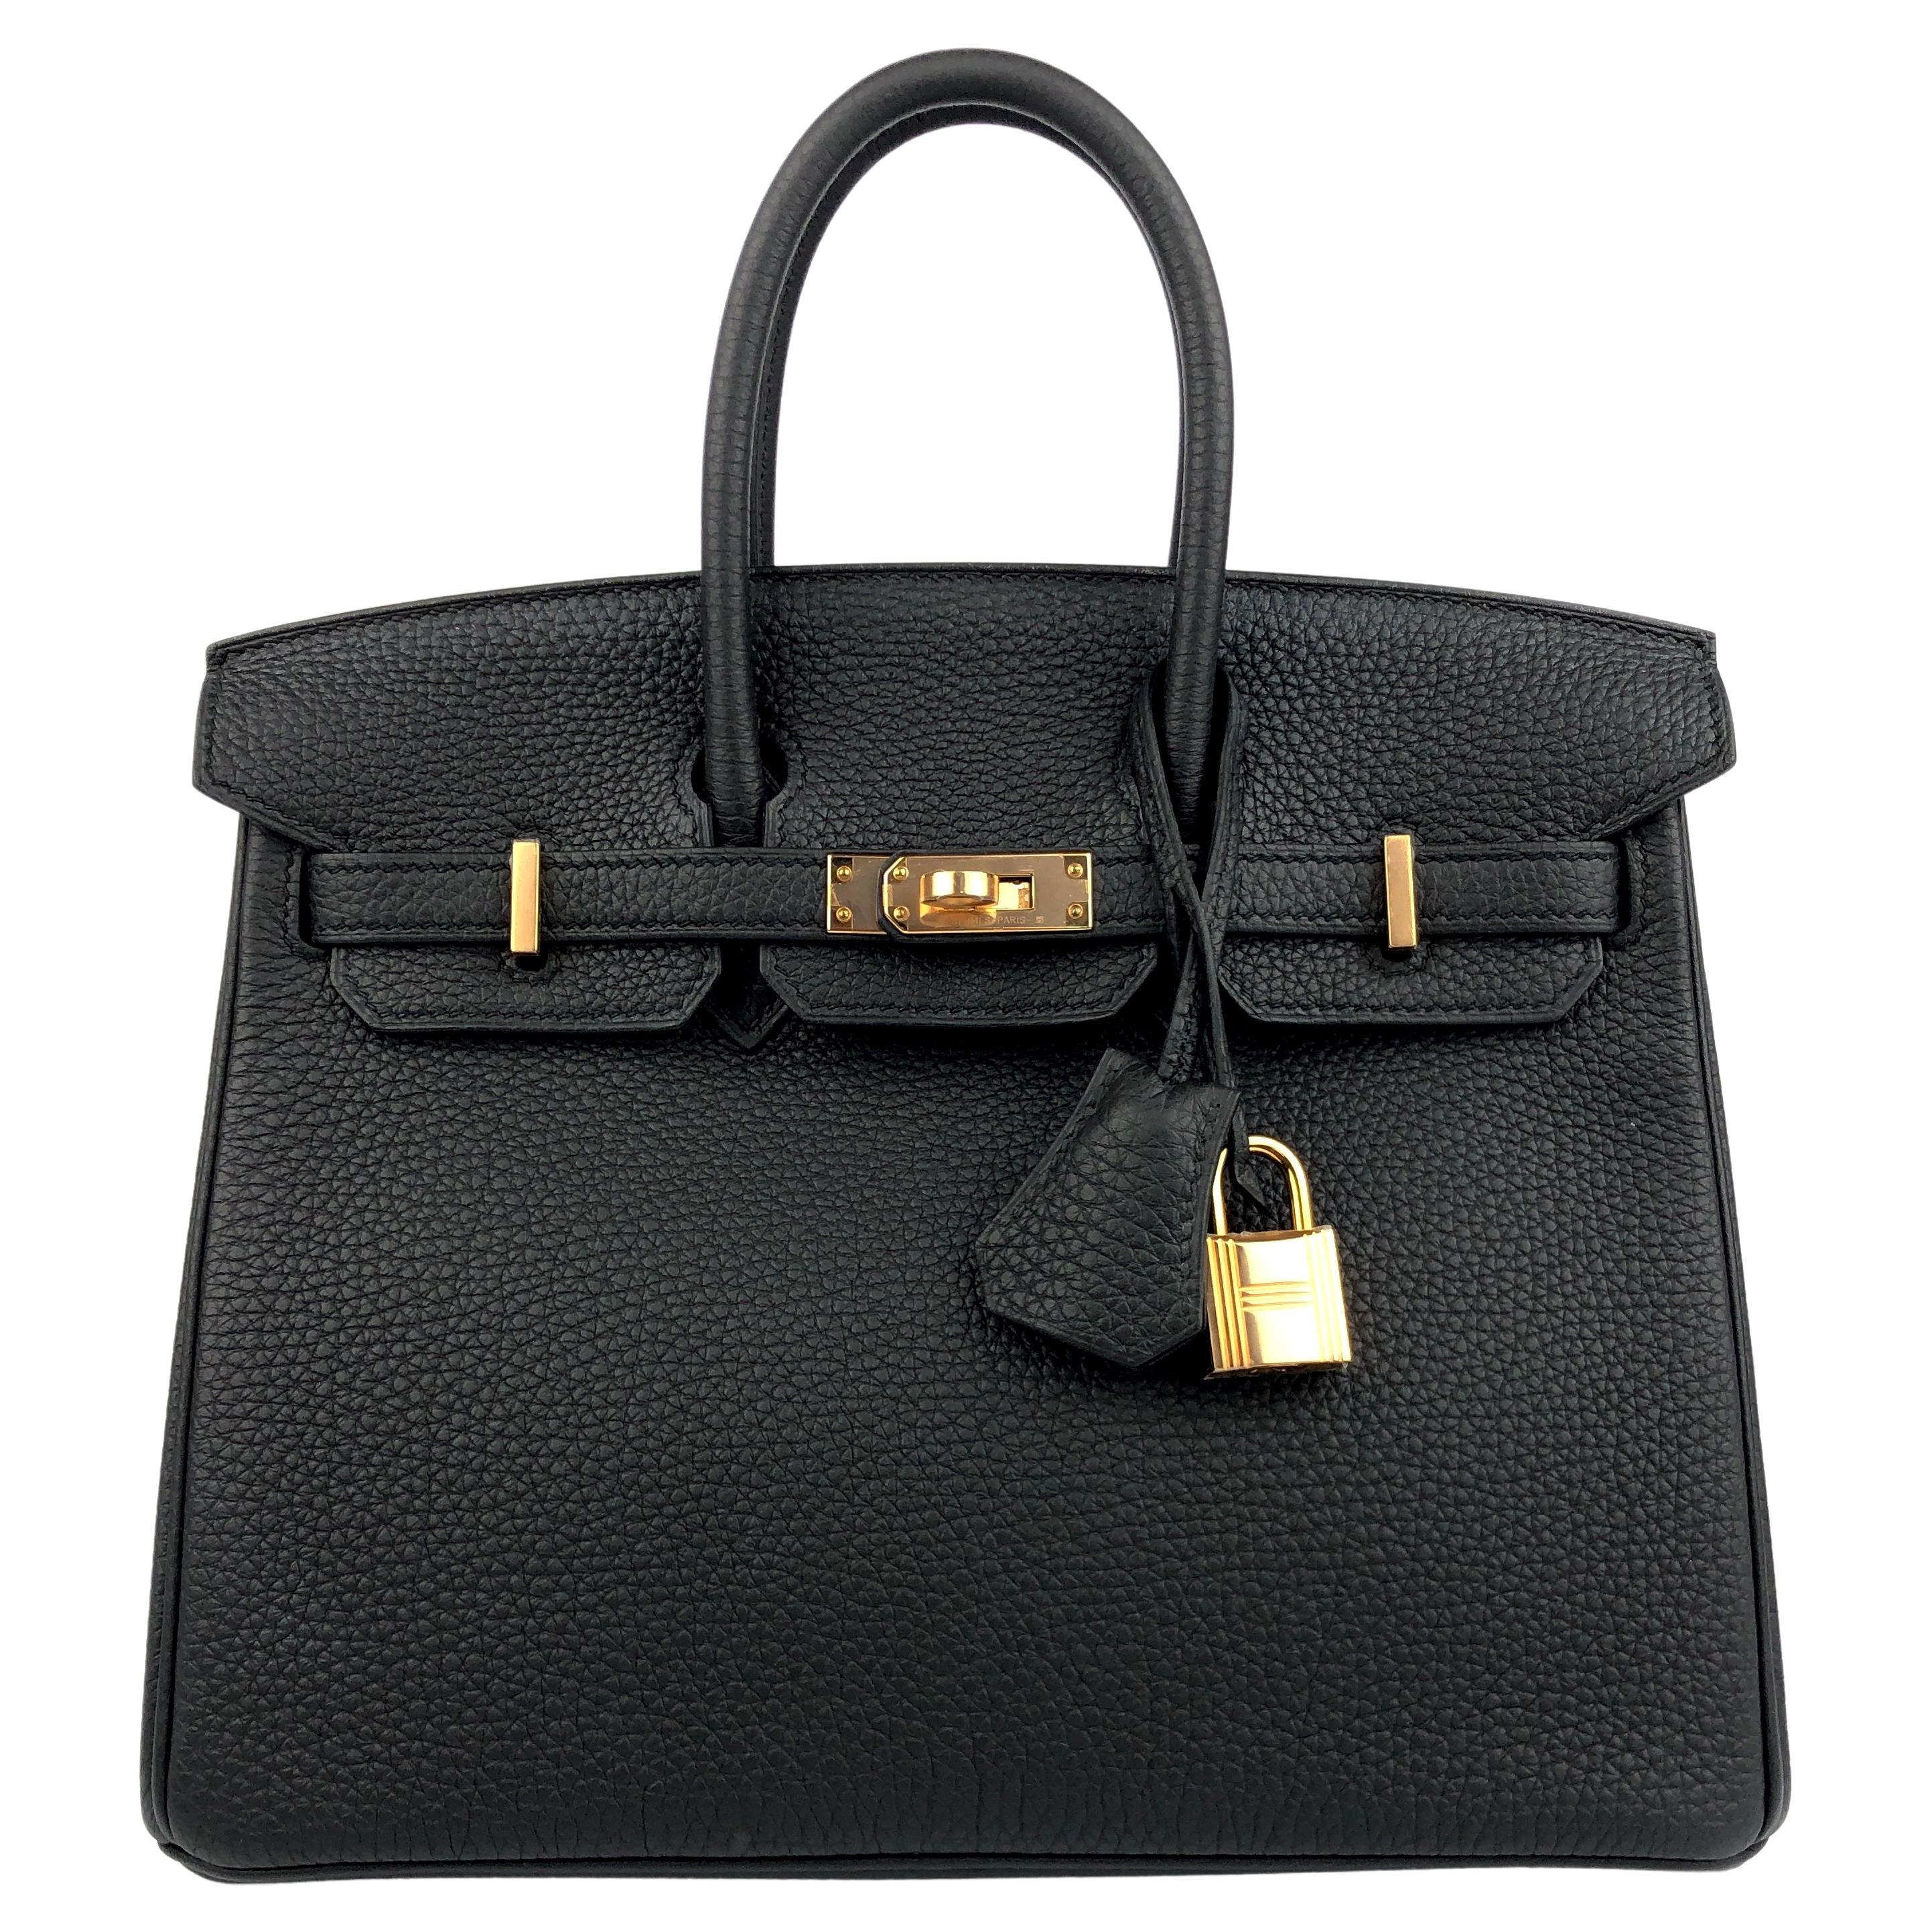 Hermes Birkin 25 Black Noir Togo Leather Handbag Rose Gold Hardware 